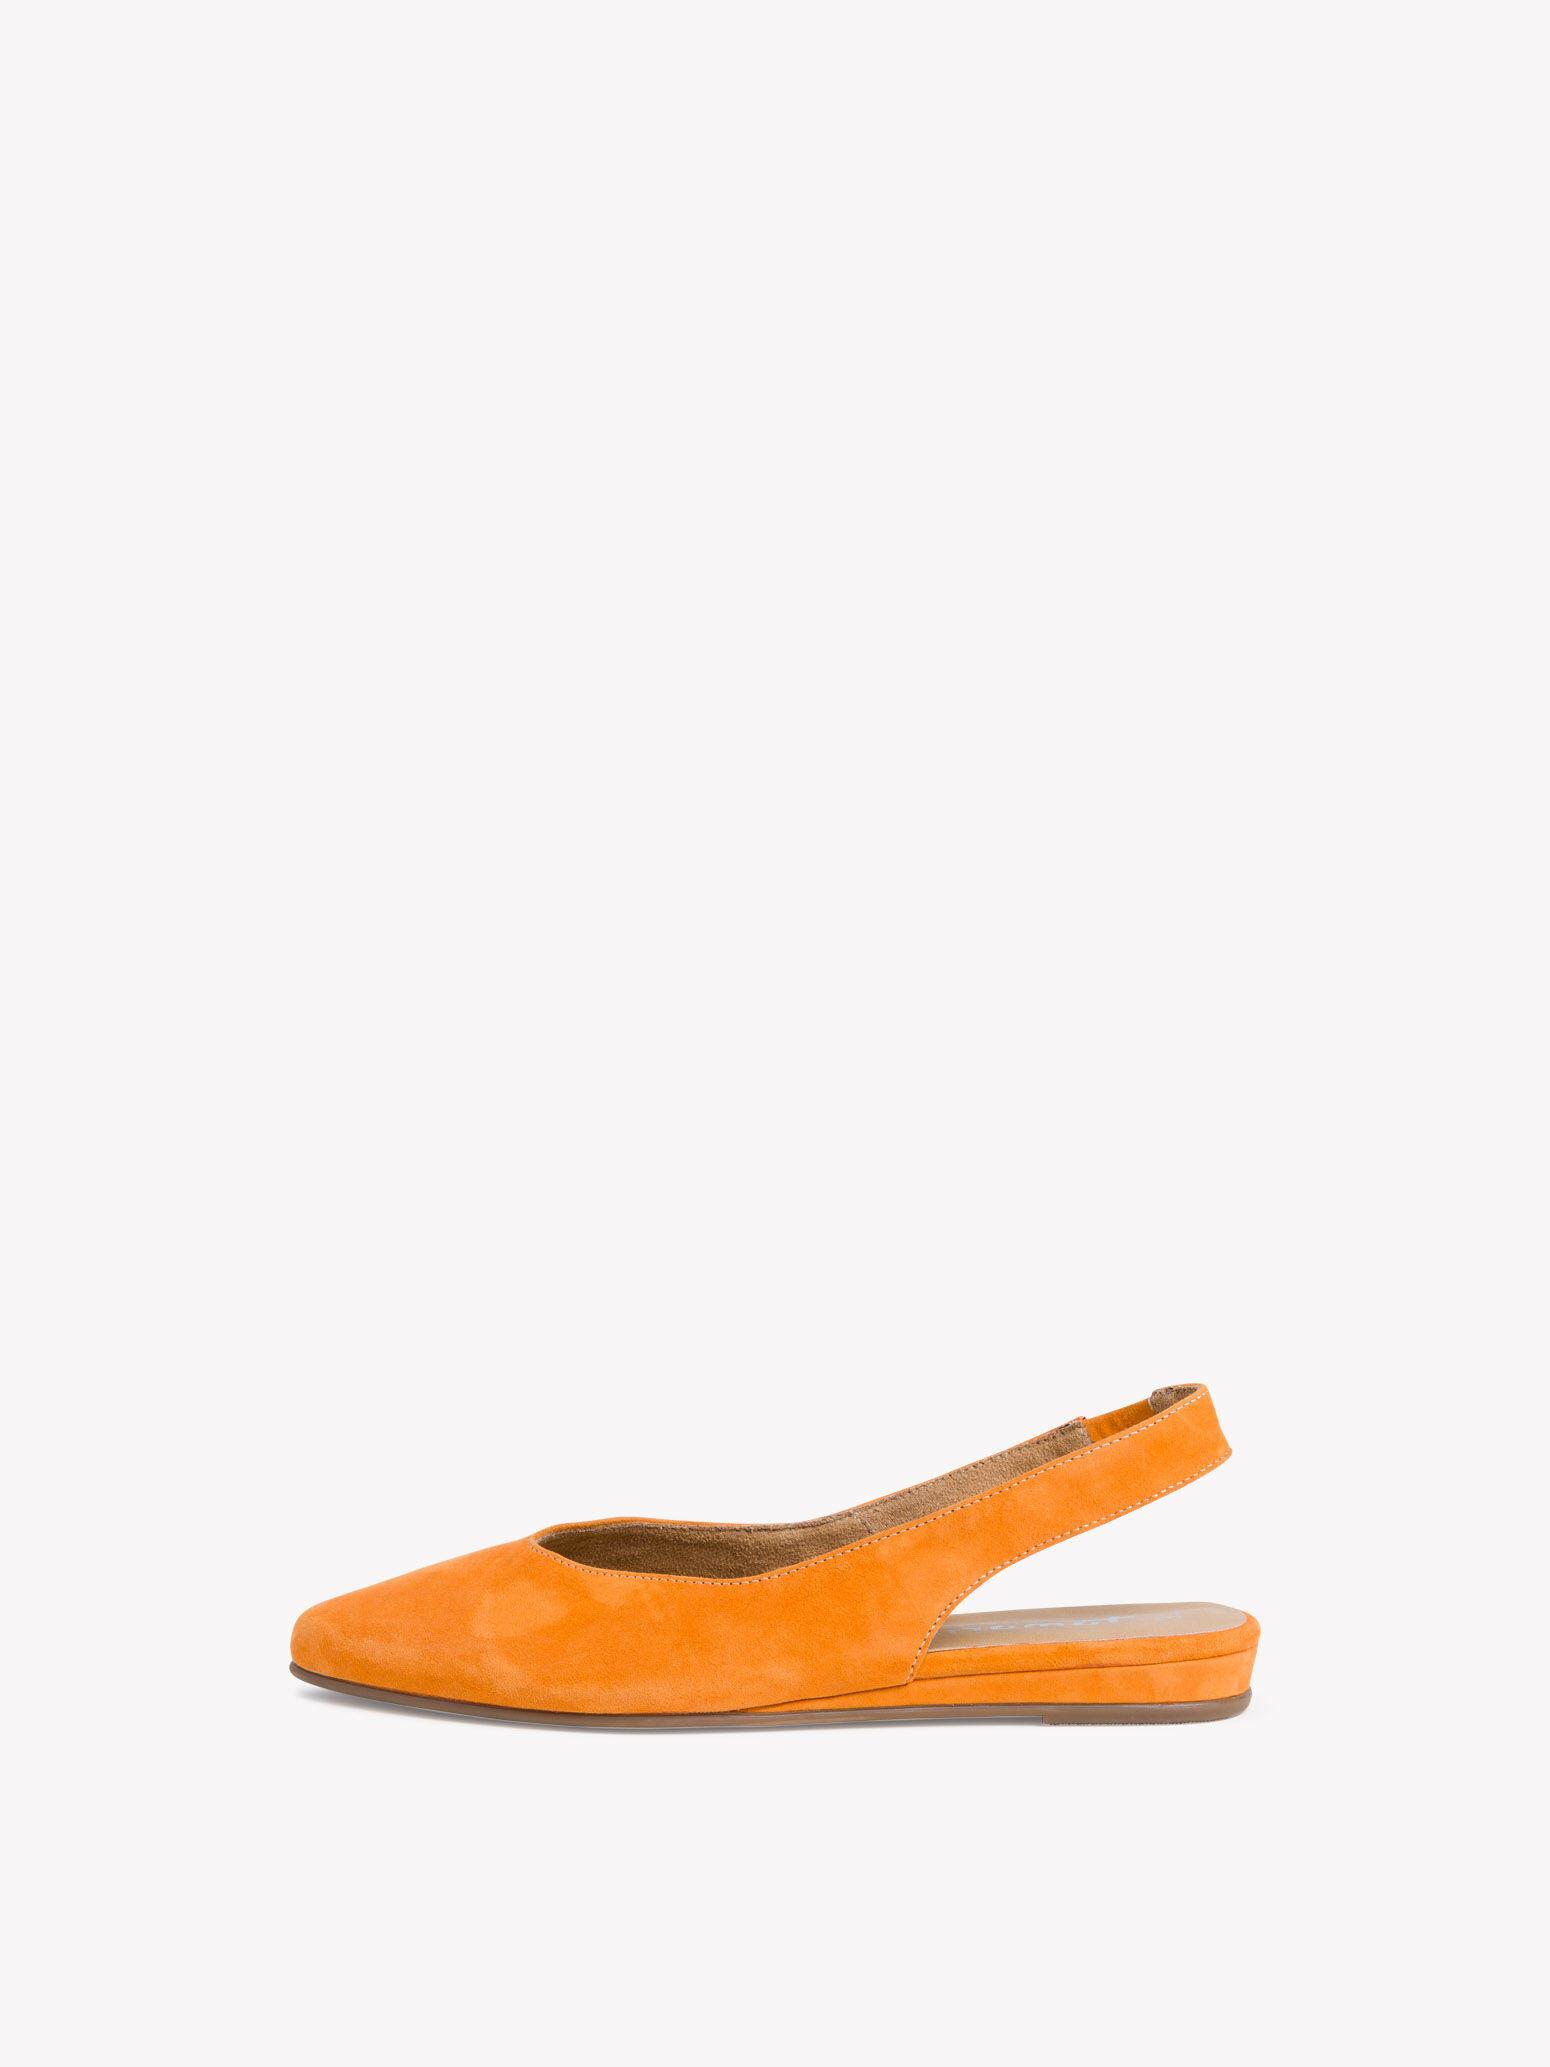 tamaris orange shoes